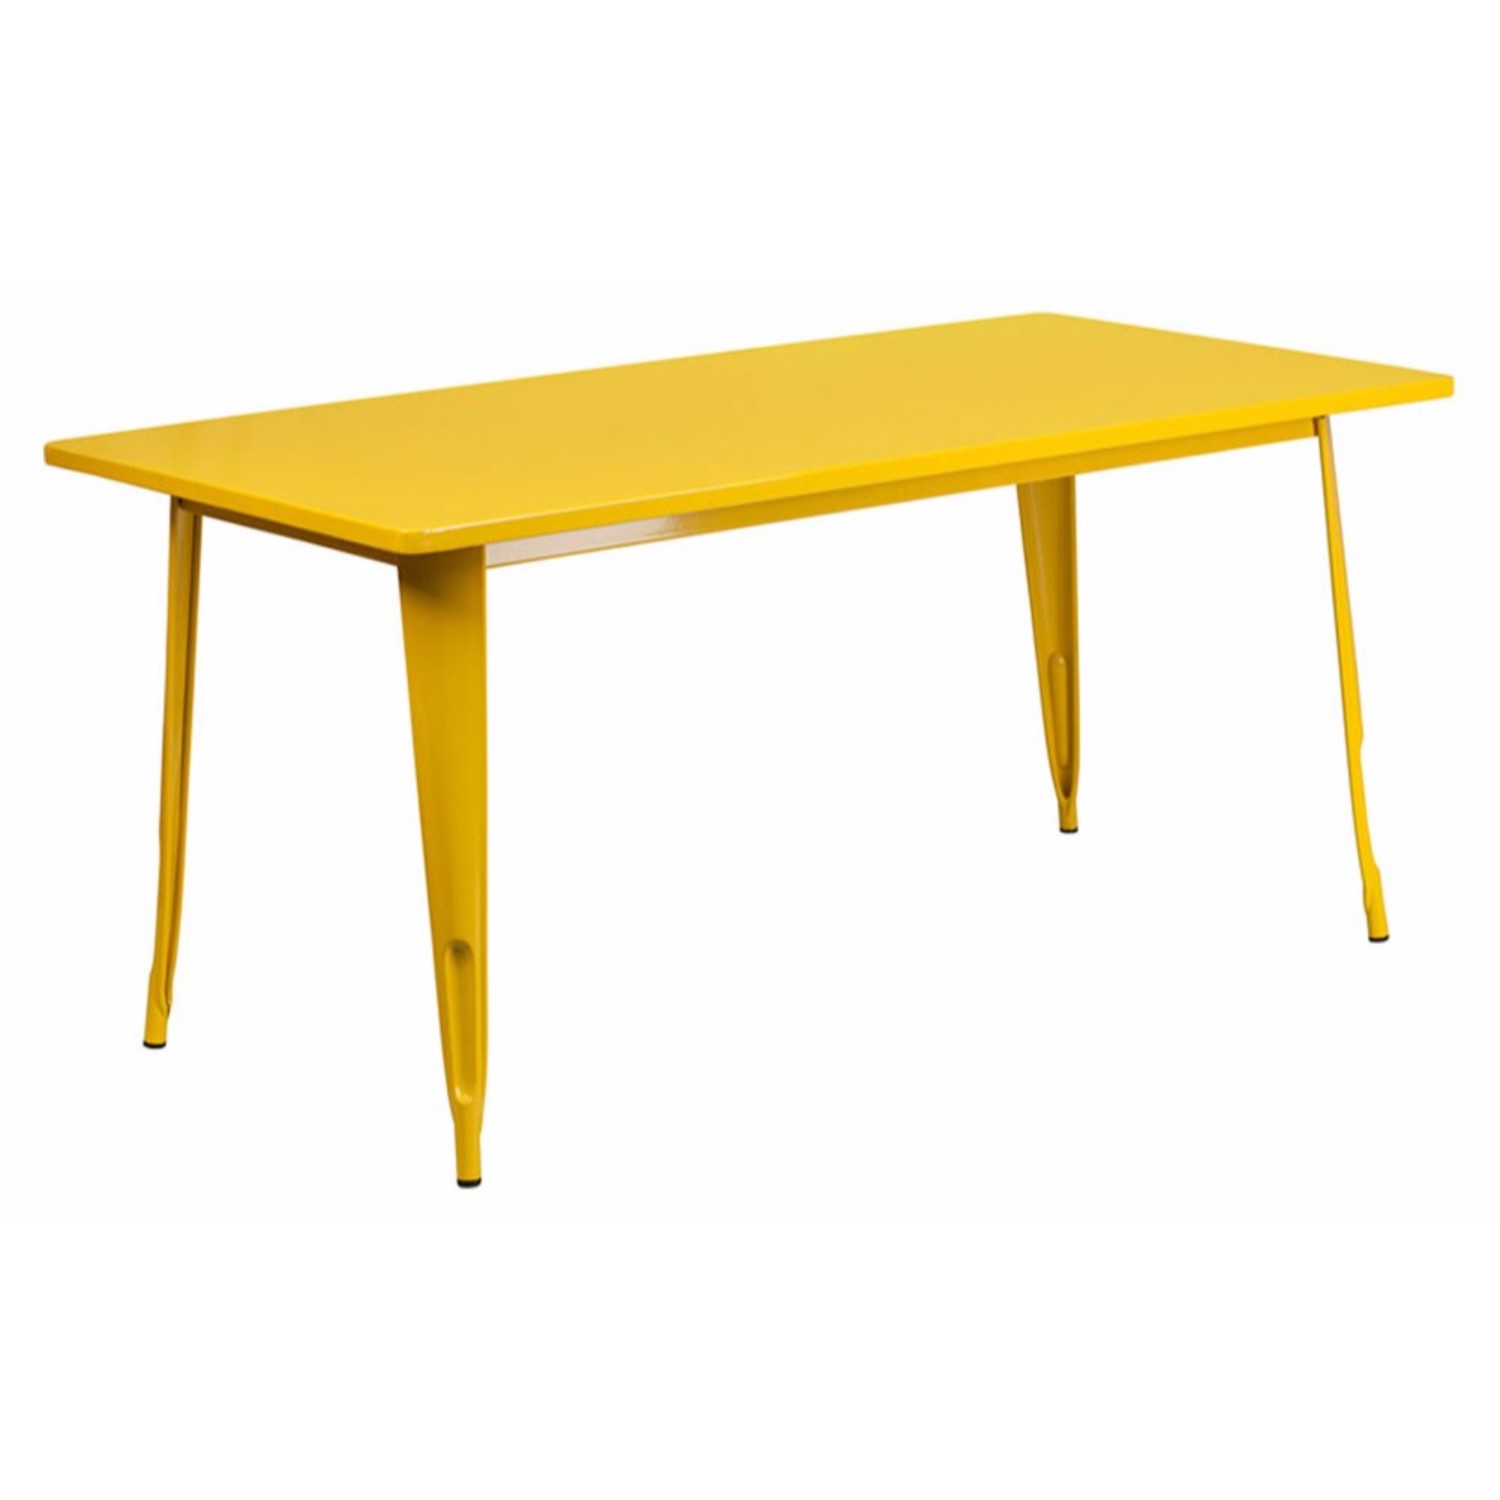 Commercial Grade 31.5" x 63" Rectangular Yellow Metal Indoor-Outdoor Table